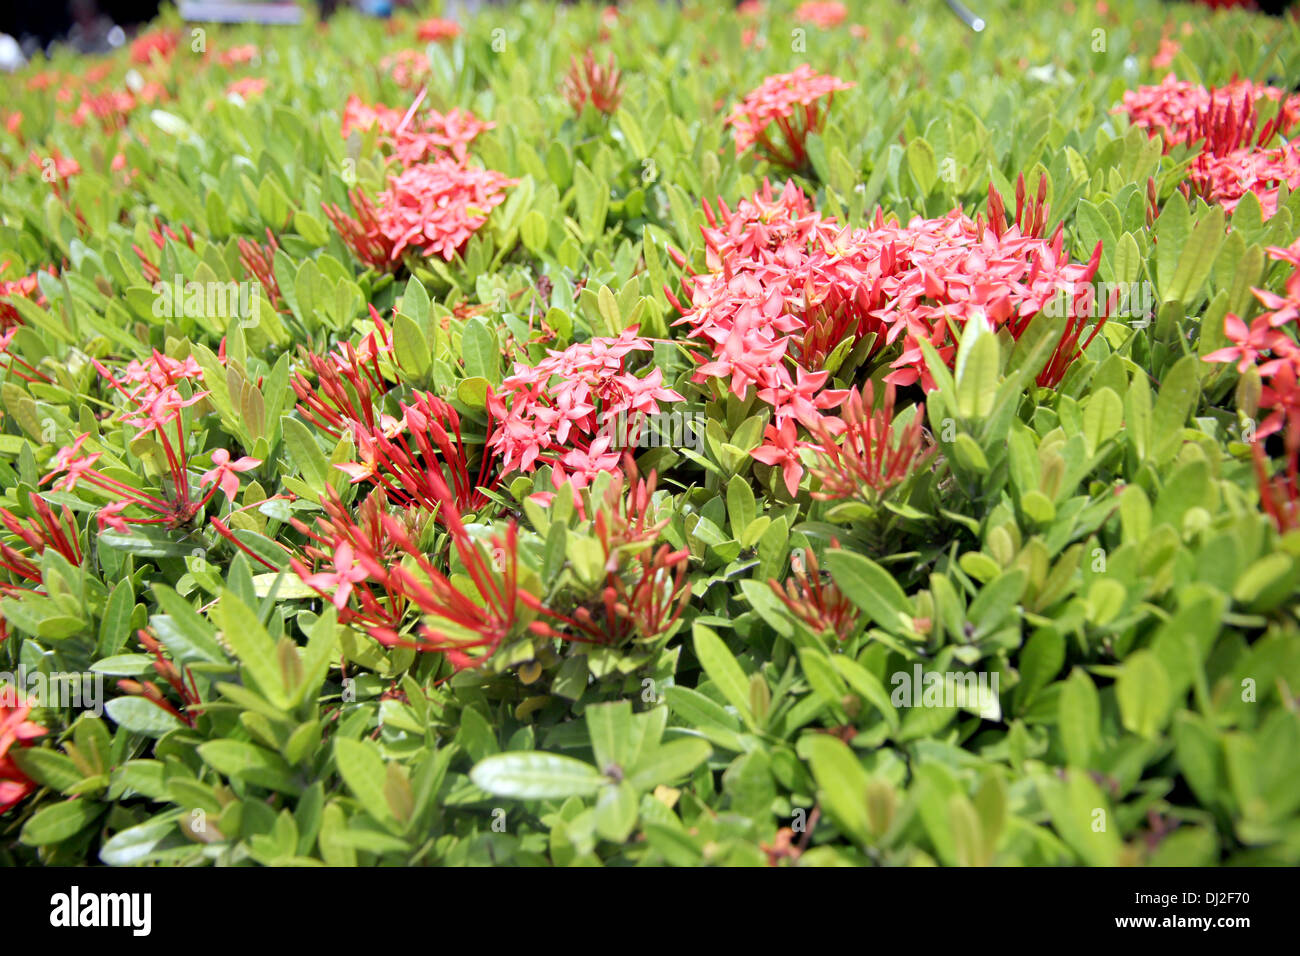 La photo de fleurs rouge tropical est Ixora fleurs dans le jardin. Banque D'Images